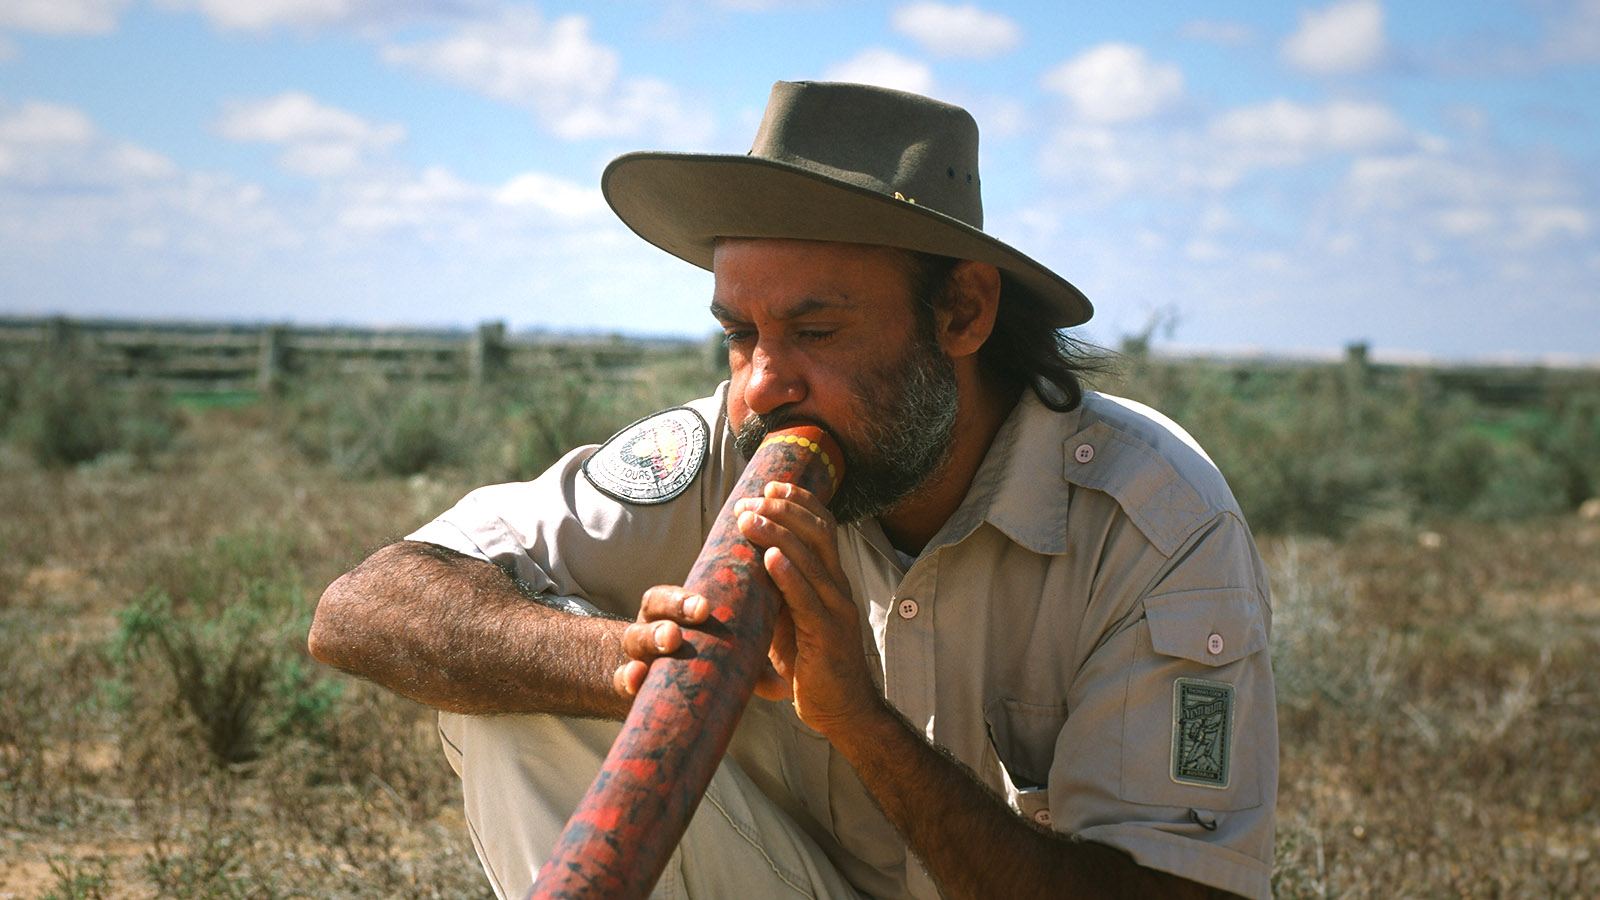 Rainbow-Serpent-Bindeglied: Musik. Graham Clarke, Guide im Mungo-Nationalpark (NSW); spielt auf dem Didgeridoo